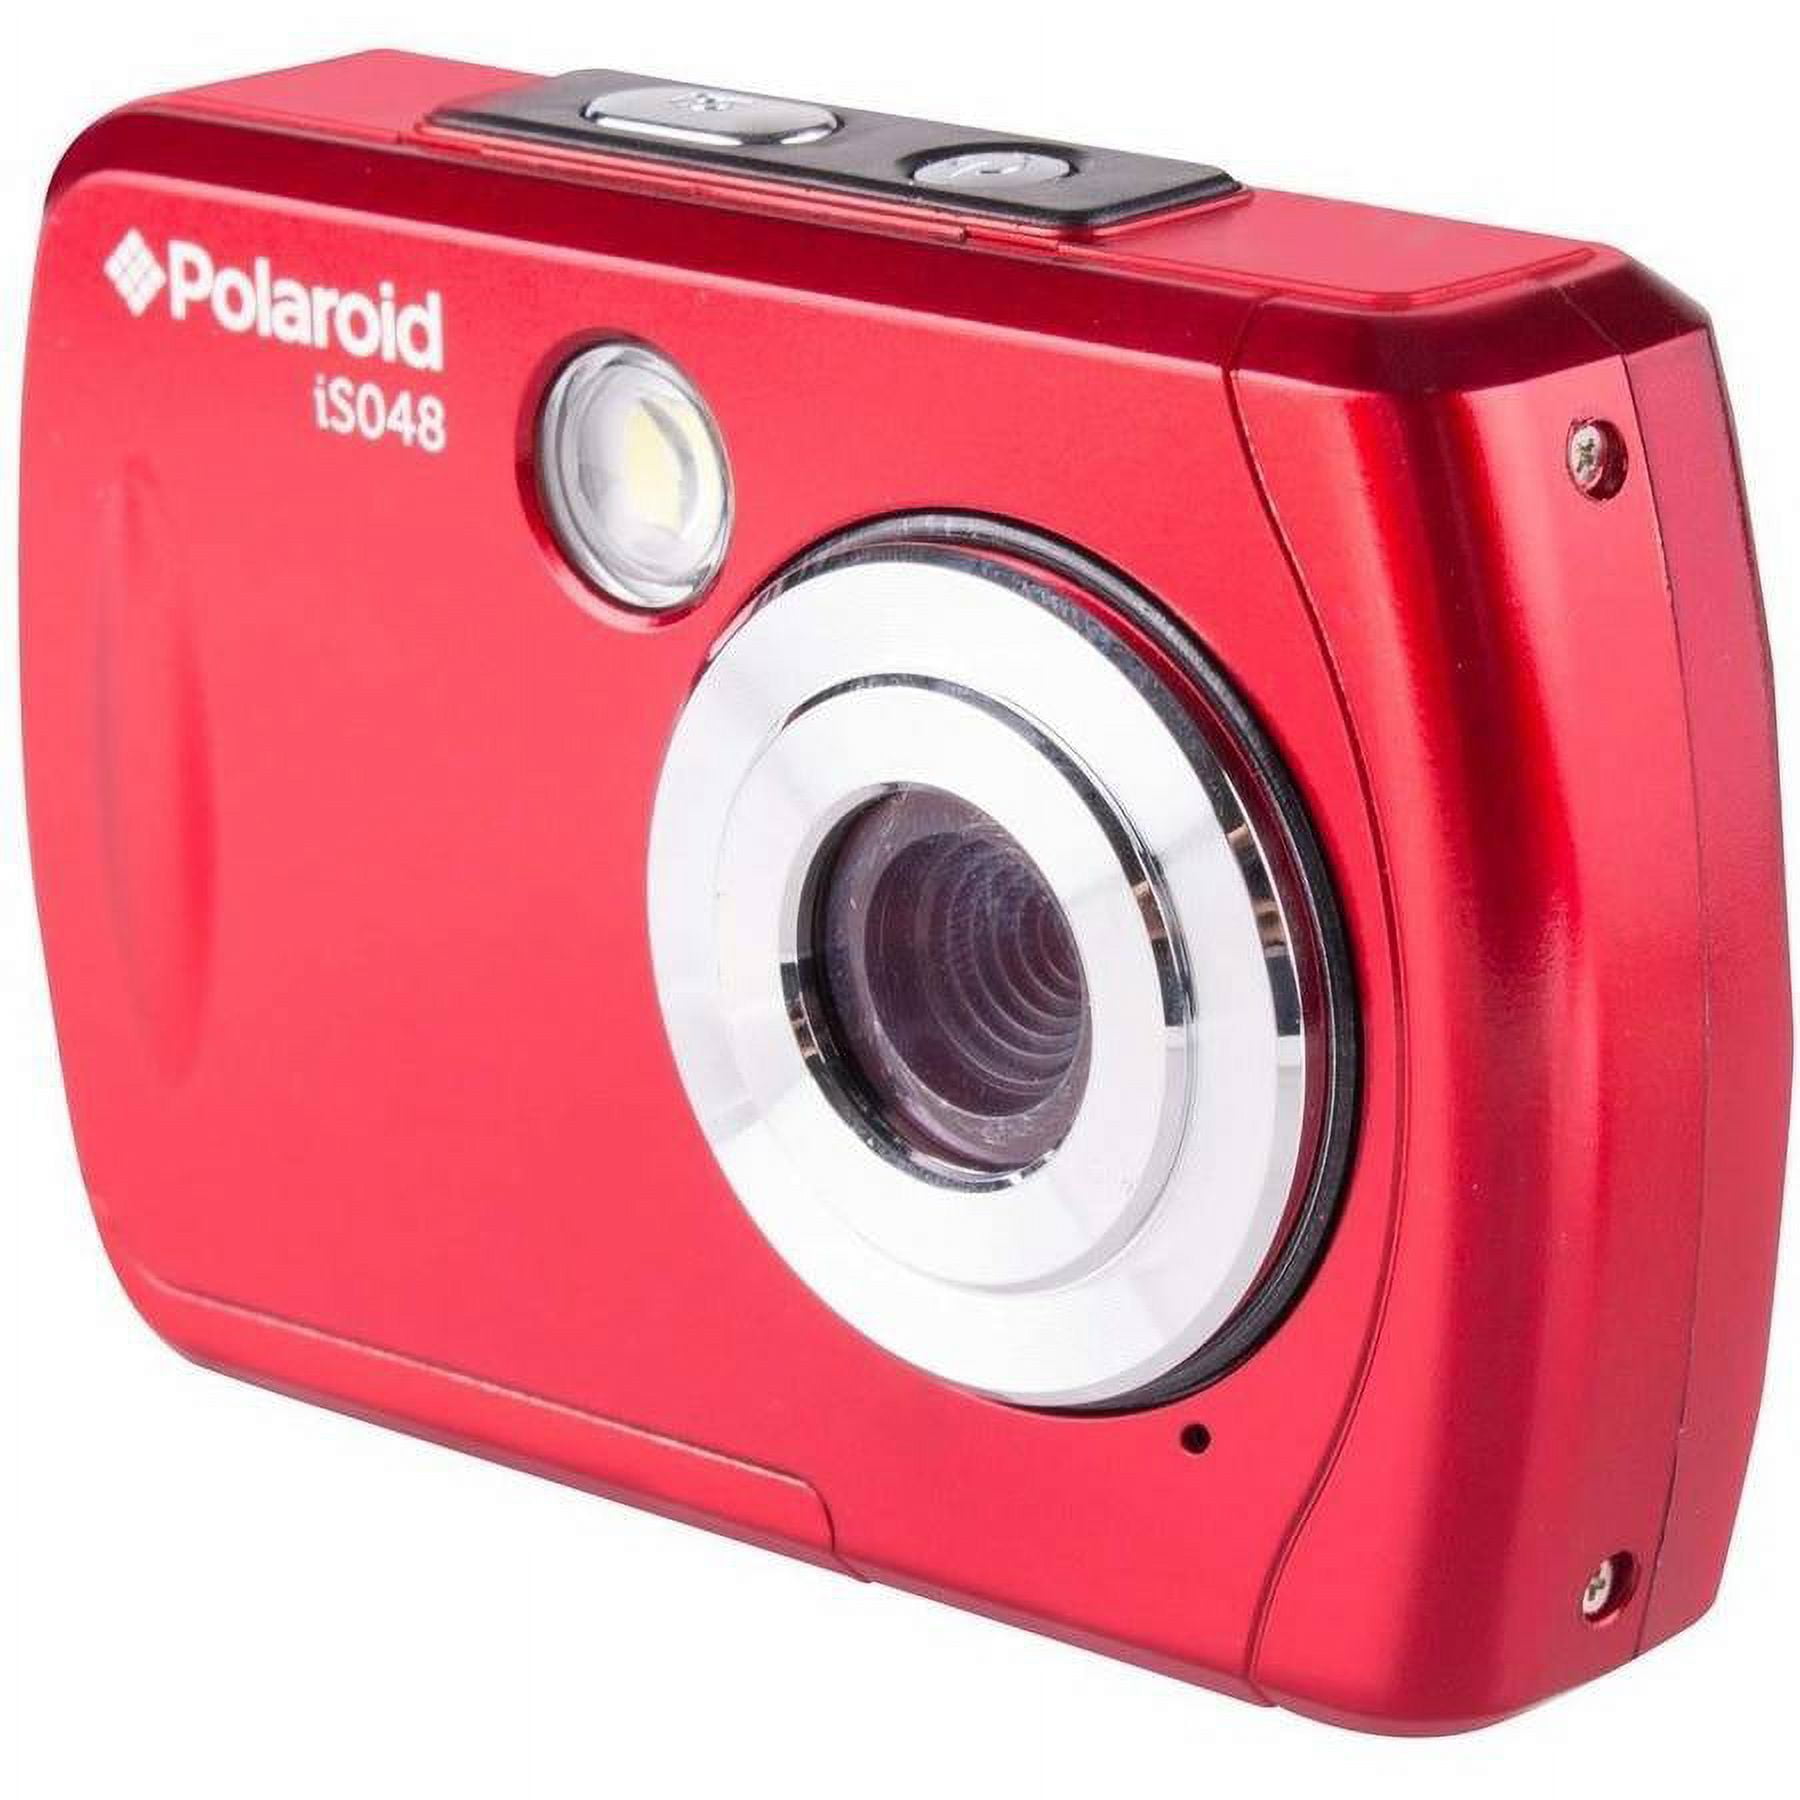 Appareil photo numérique étanche iSO48 de Polaroid à 16 mégapixels